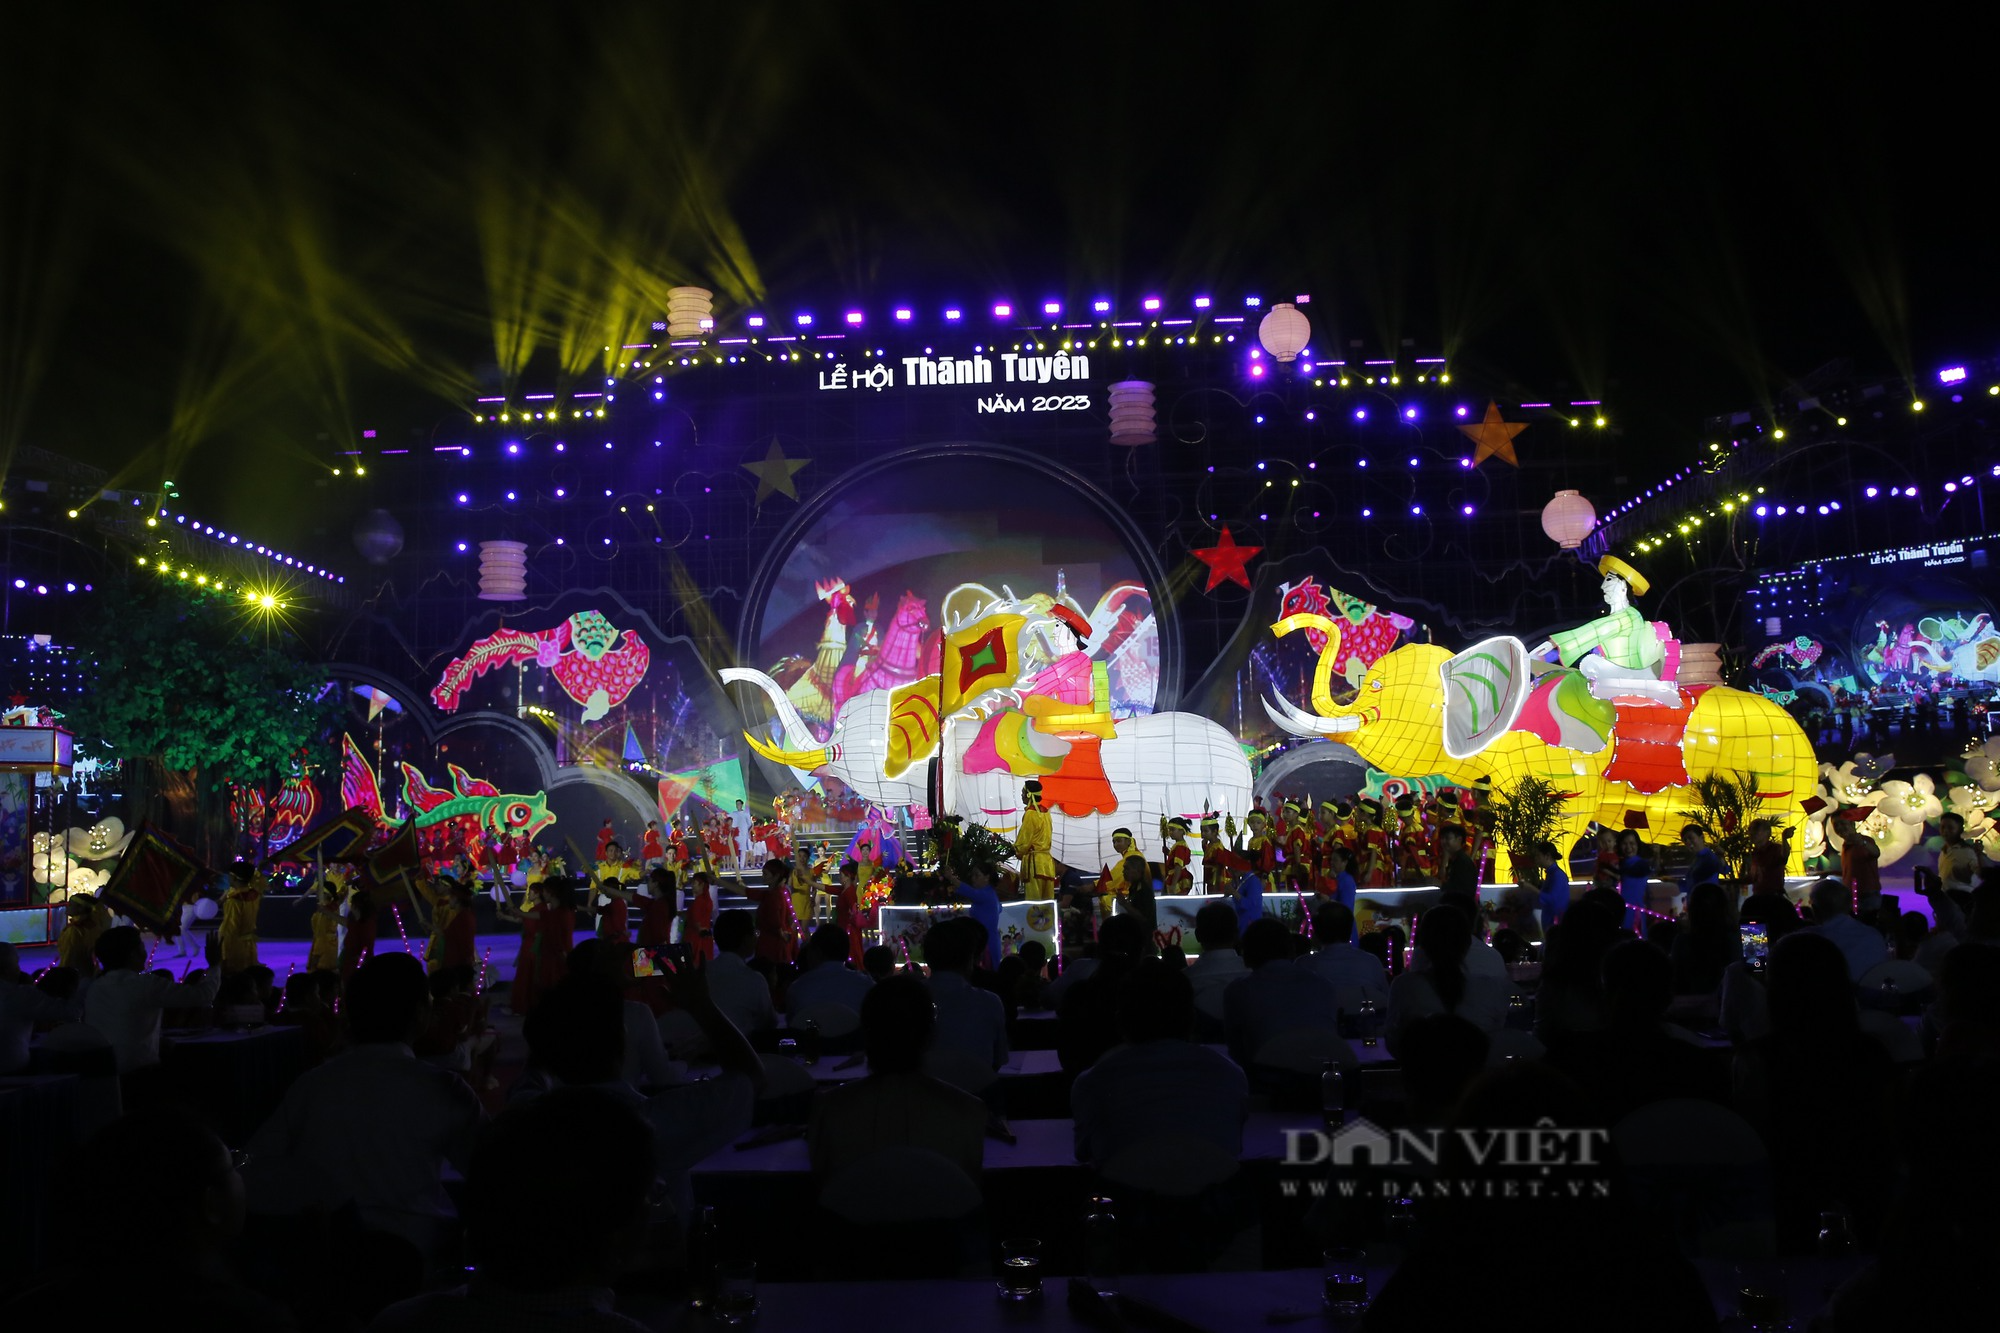 Chiêm ngưỡng những mô hình đèn Trung thu khổng lồ tại Lễ hội thành Tuyên năm 2023 - Ảnh 1.